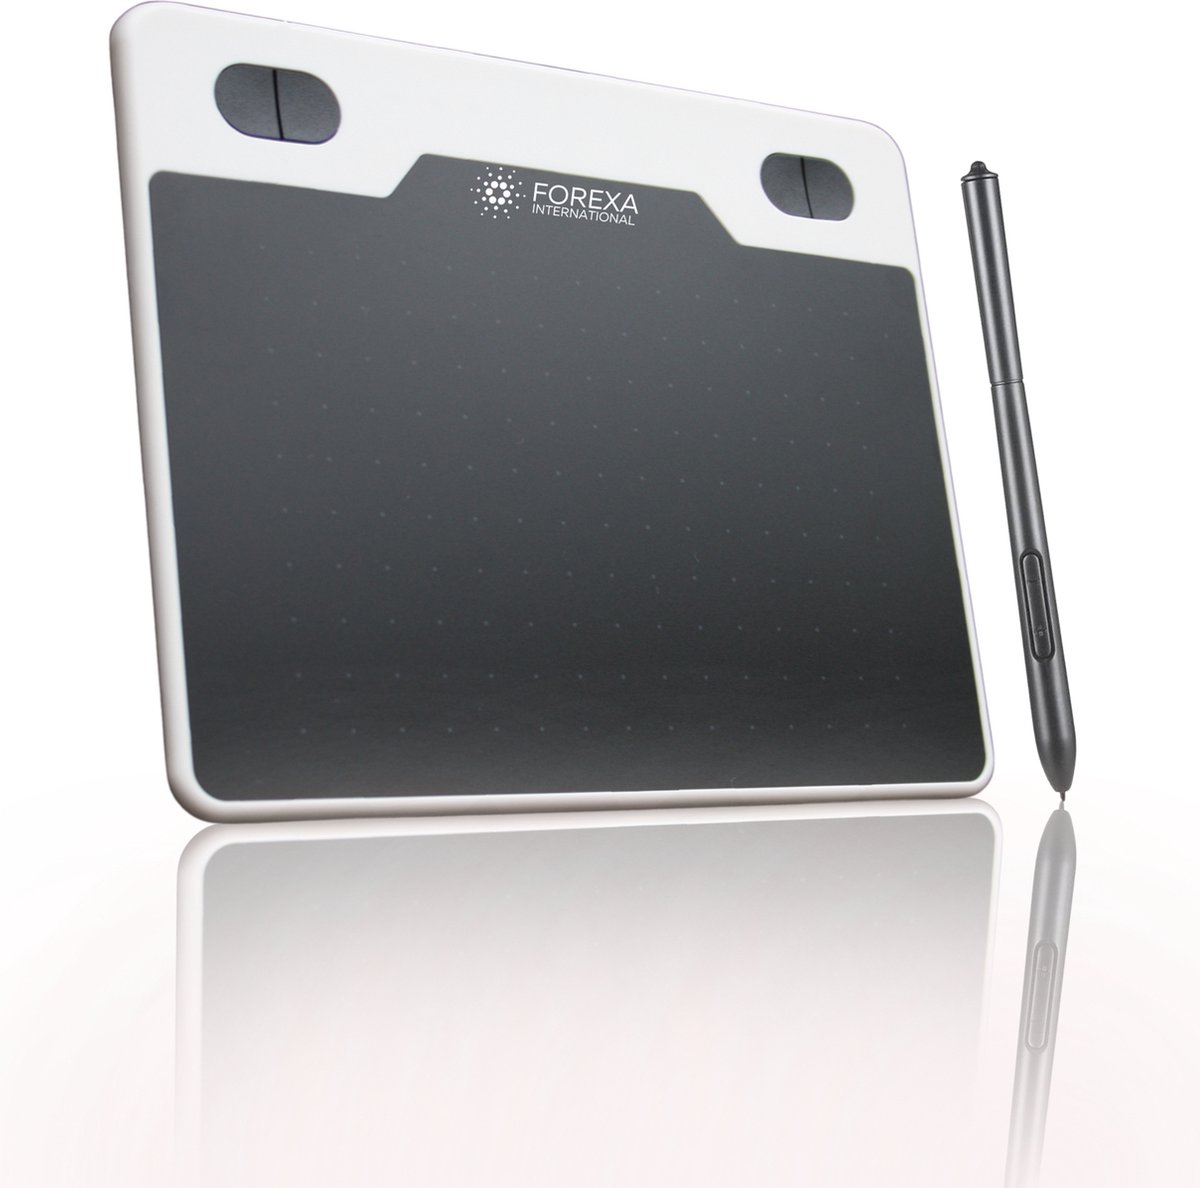 Forexa Tekentablet - Grafische tablet - 6 Inch - 5080 LPI - Geschikt voor Windows/Mac OS/Android - USB - Wit